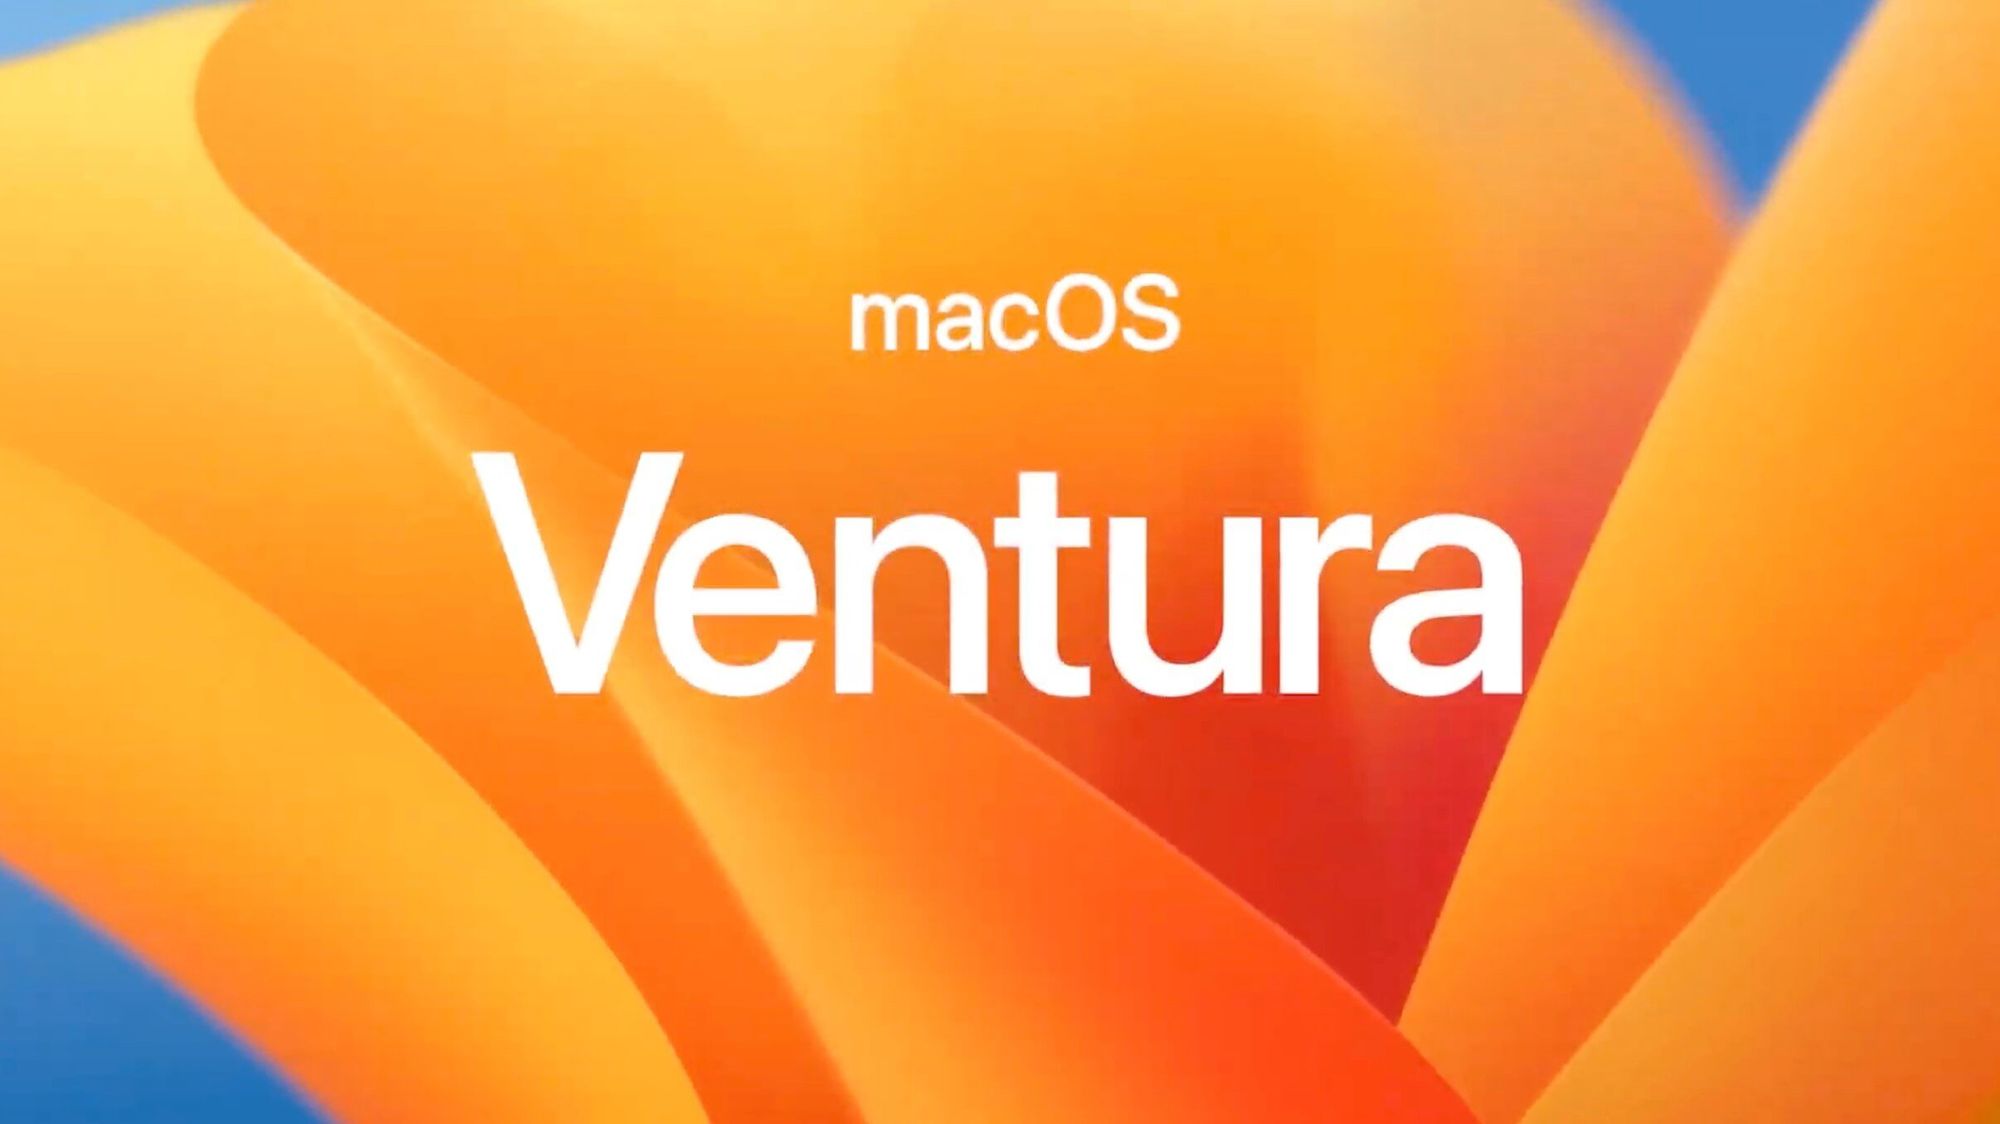 Новое в macOS Vetura: фоновый звук для концентрации внимания